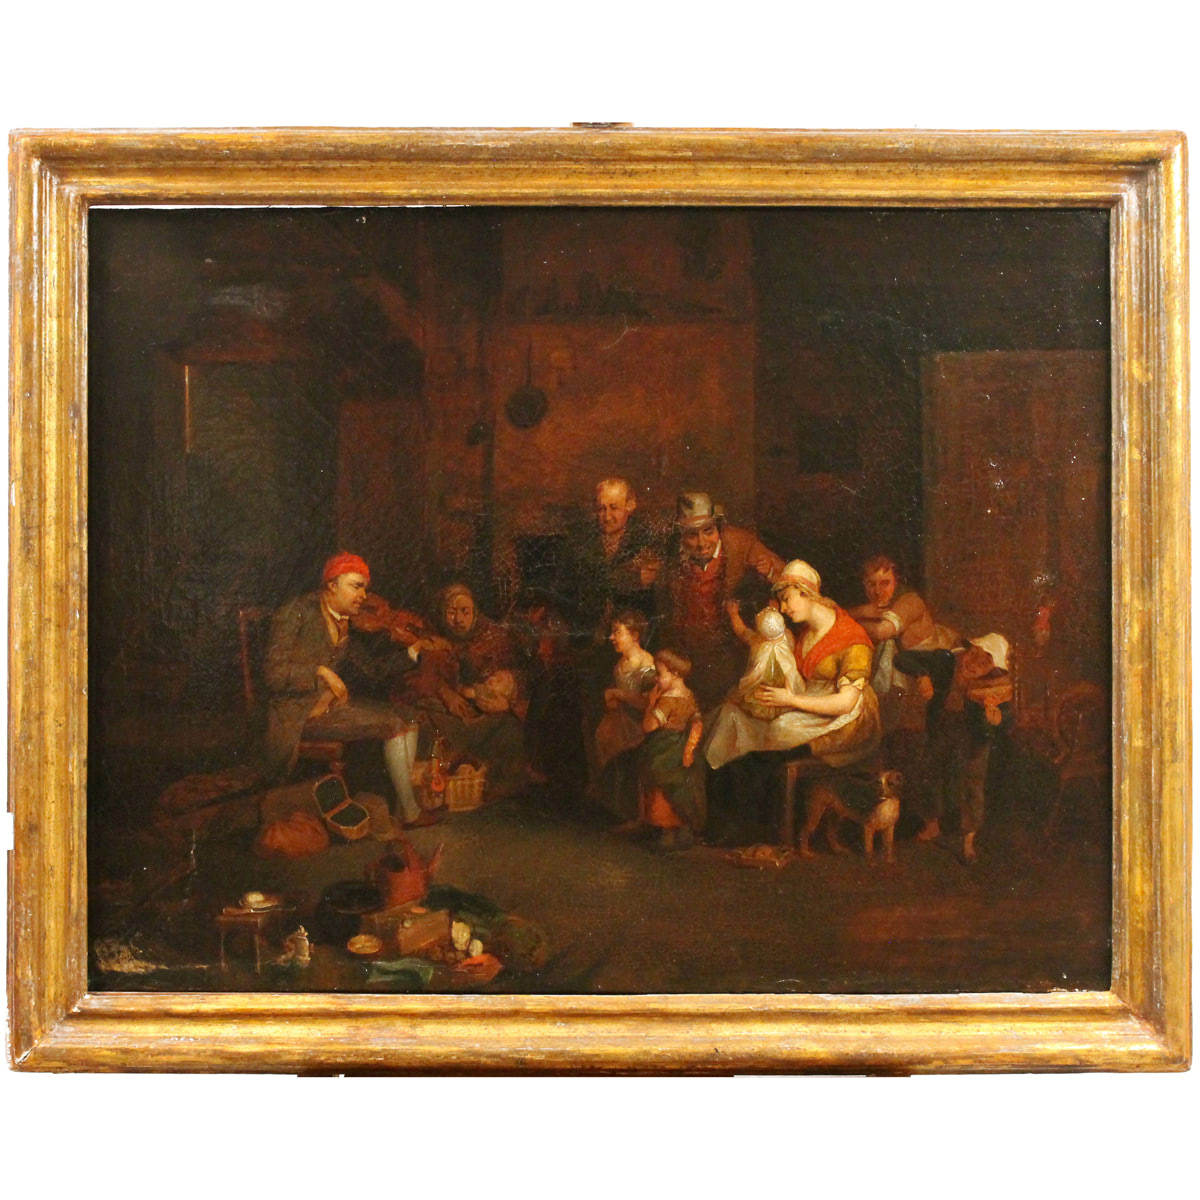 Scuola fiamminga del secolo XVIII "Scena di interno con figure" - 18th century Flemish school "Interior scene with figures"